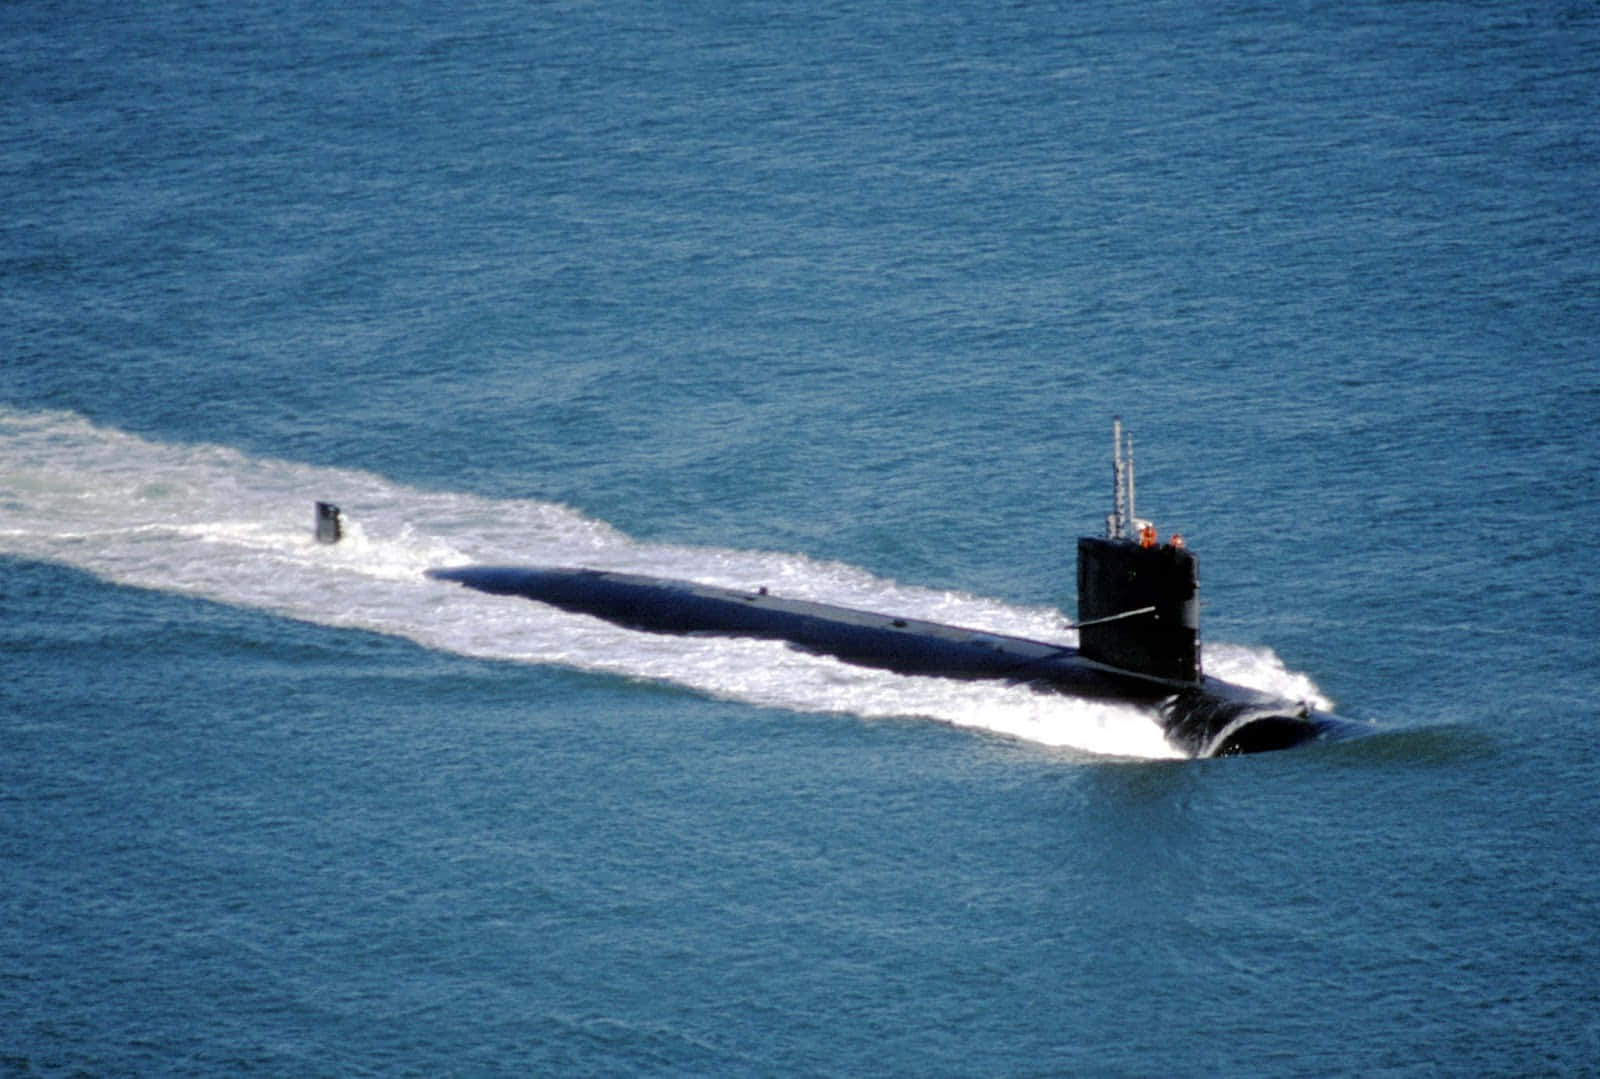 A submarine navigating through a peaceful ocean